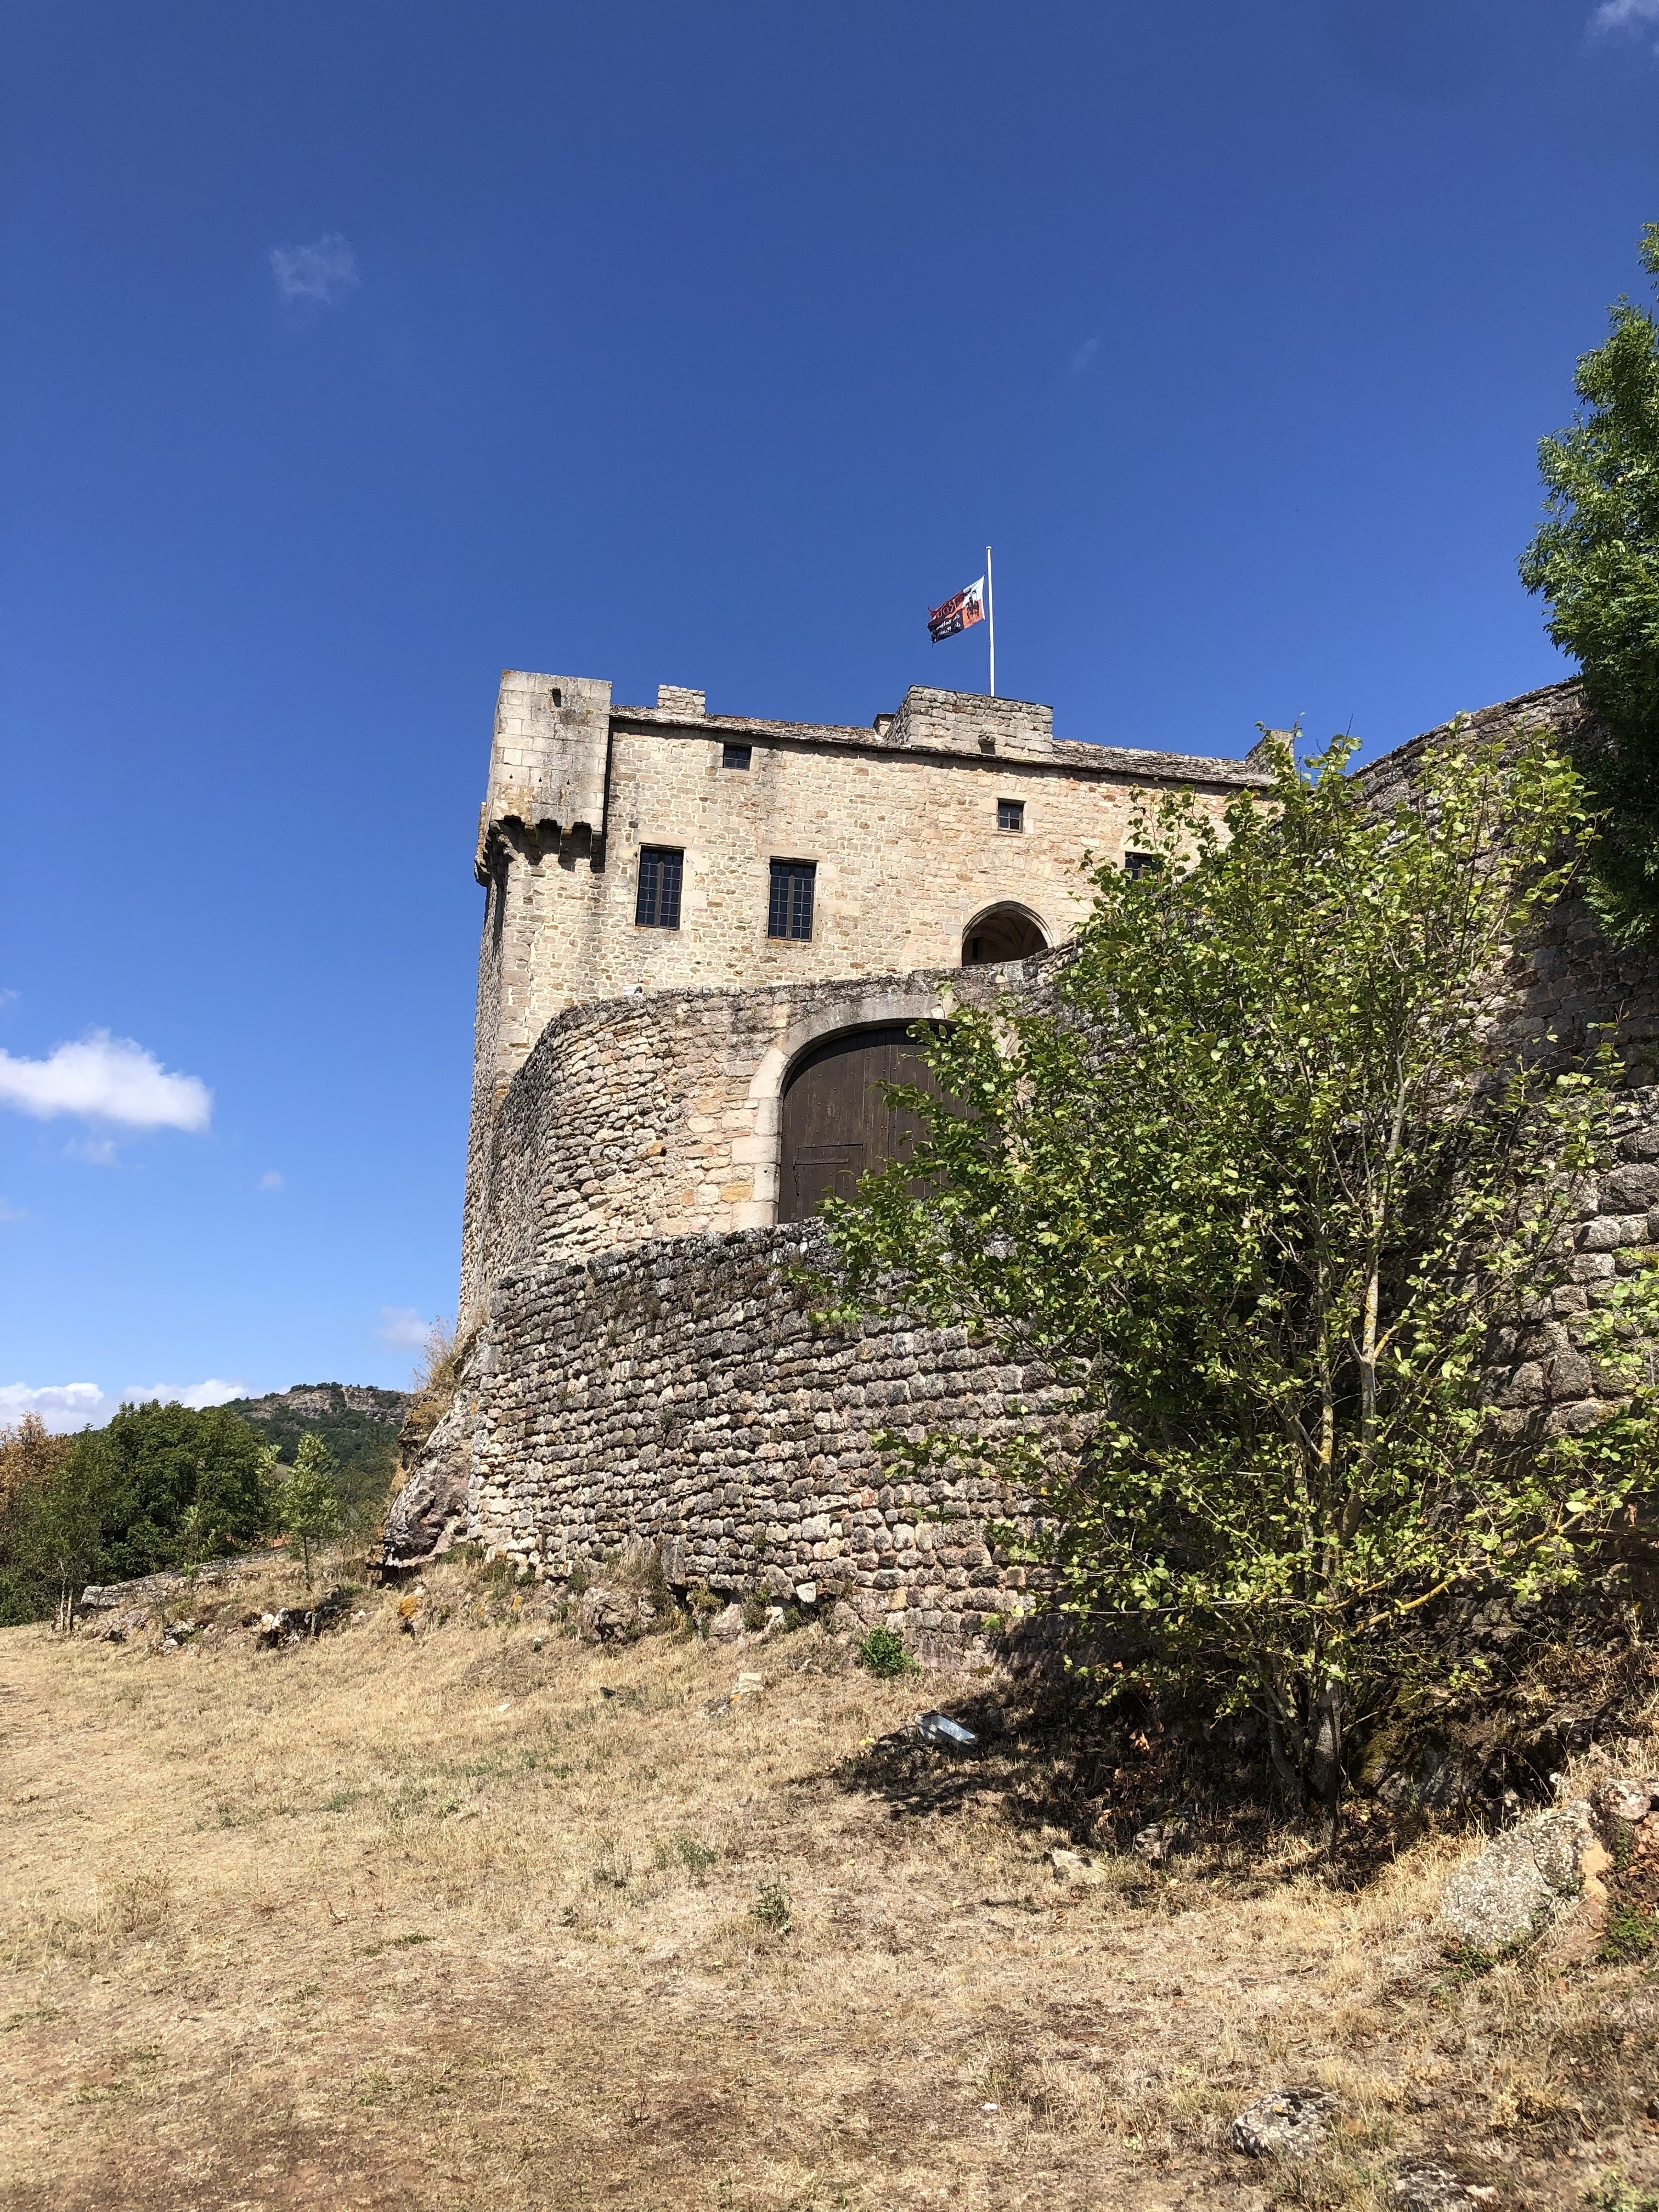 Le château de Montaigut